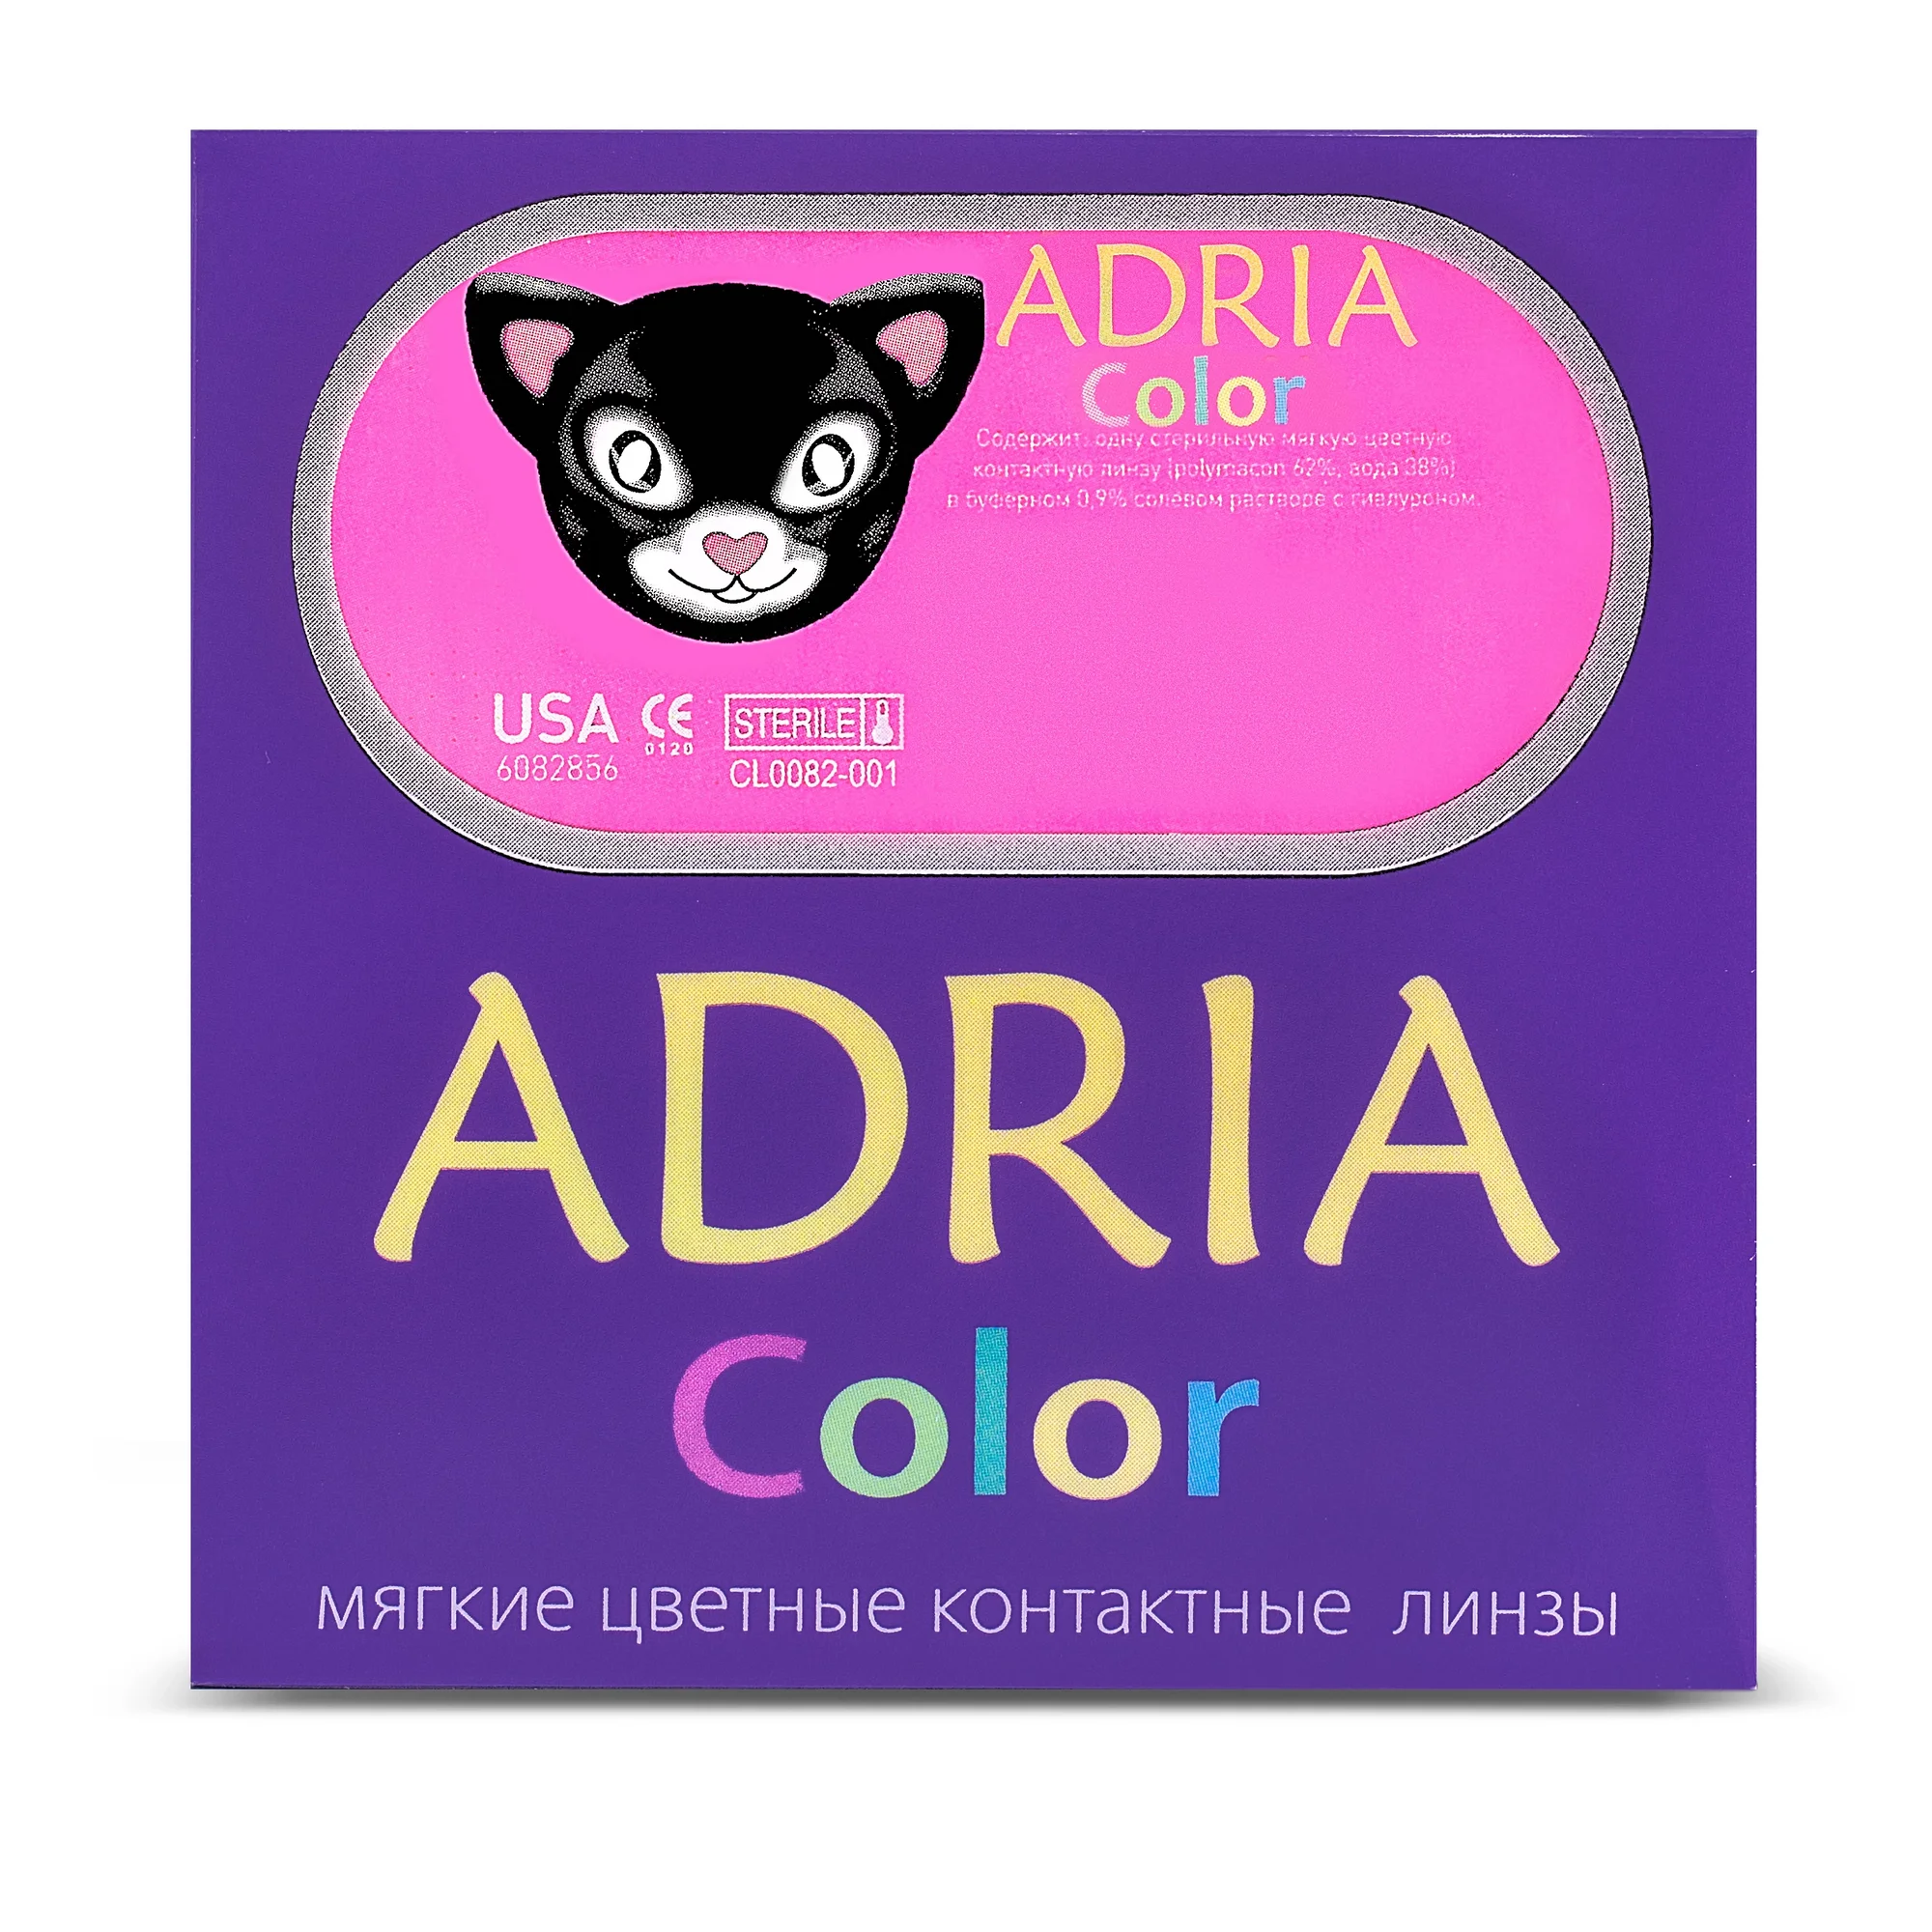 COLOR BOX ADRIA Color 1 Tone Brown (карий)